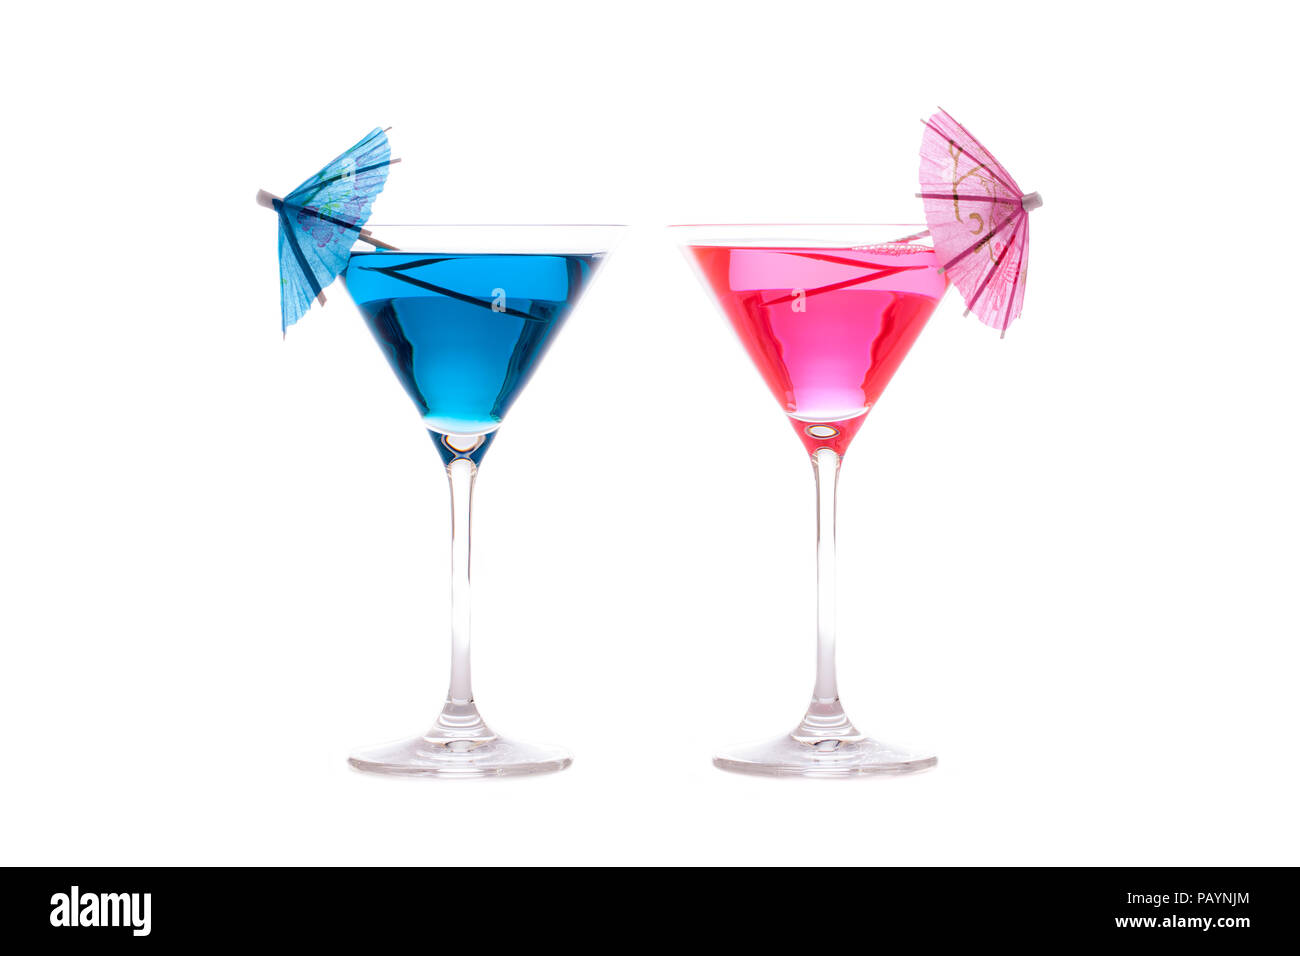 Für Sie und Ihn Partei oder Ferienhäuser Cocktails. Neon Blau und Rosa Sommer Spaß alkoholische Getränke in cocktail Gläser mit dekorativen Sonnenschirmen. Wieder isoliert Stockfoto